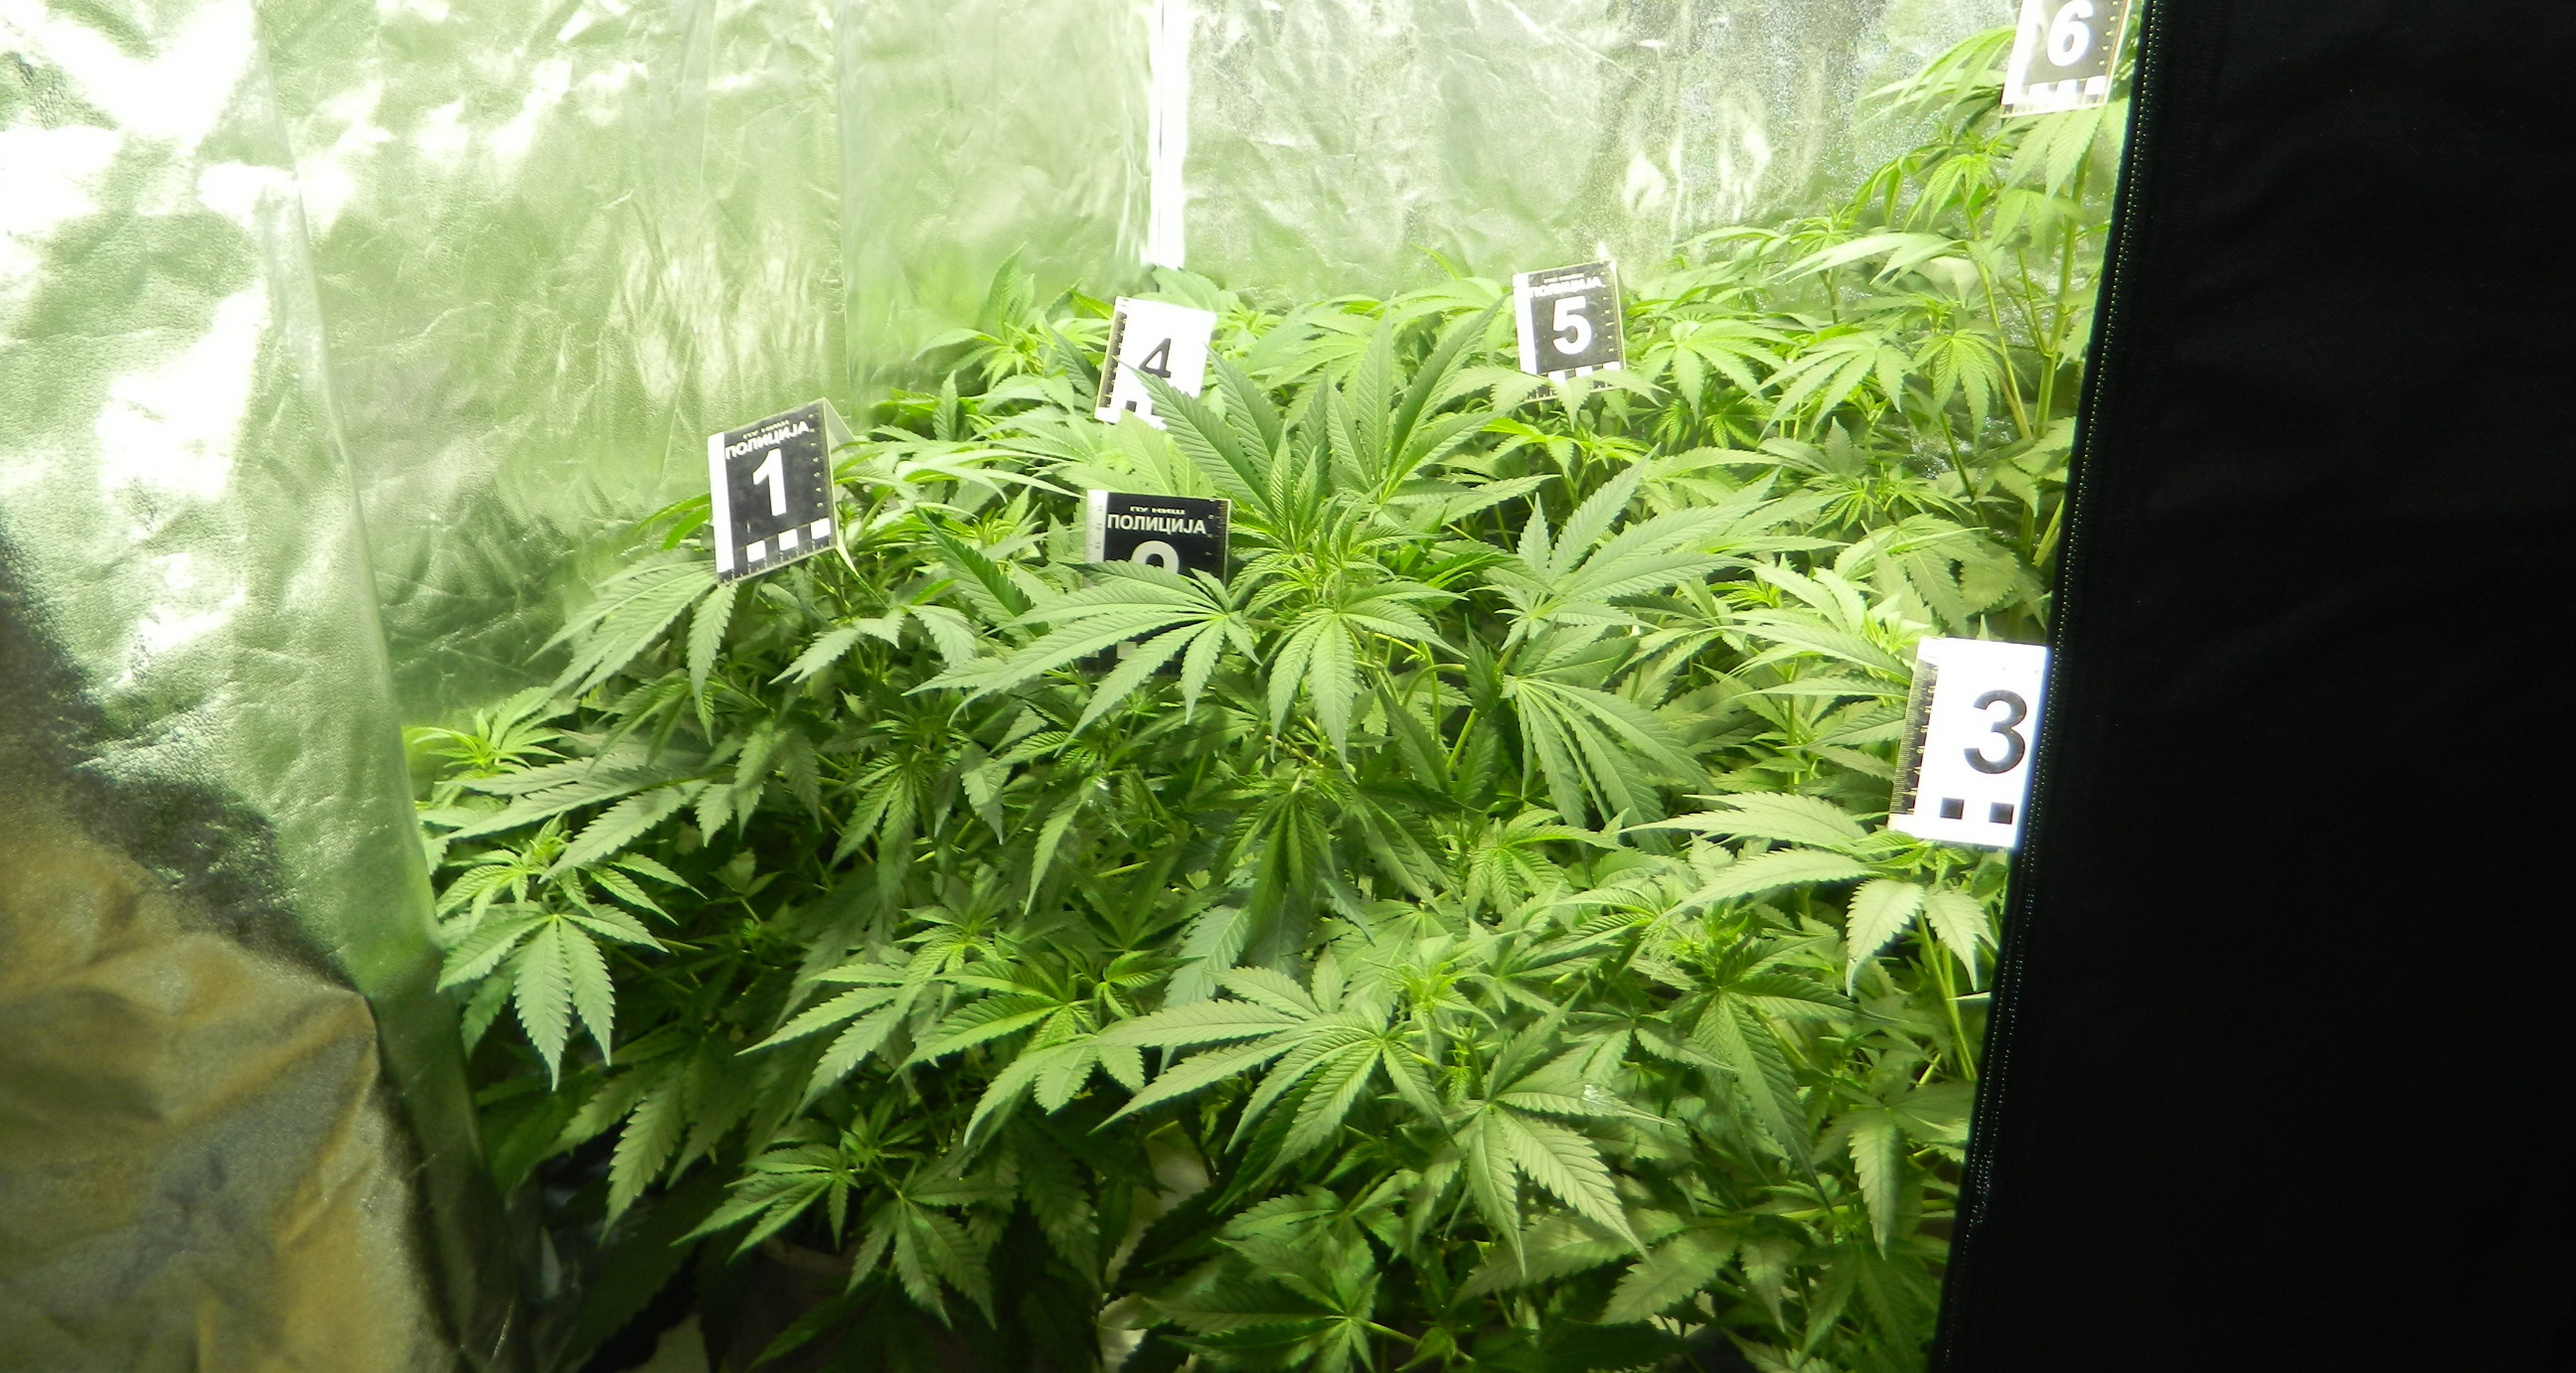 Otkrivena laboratorija za uzgajanje marihuane